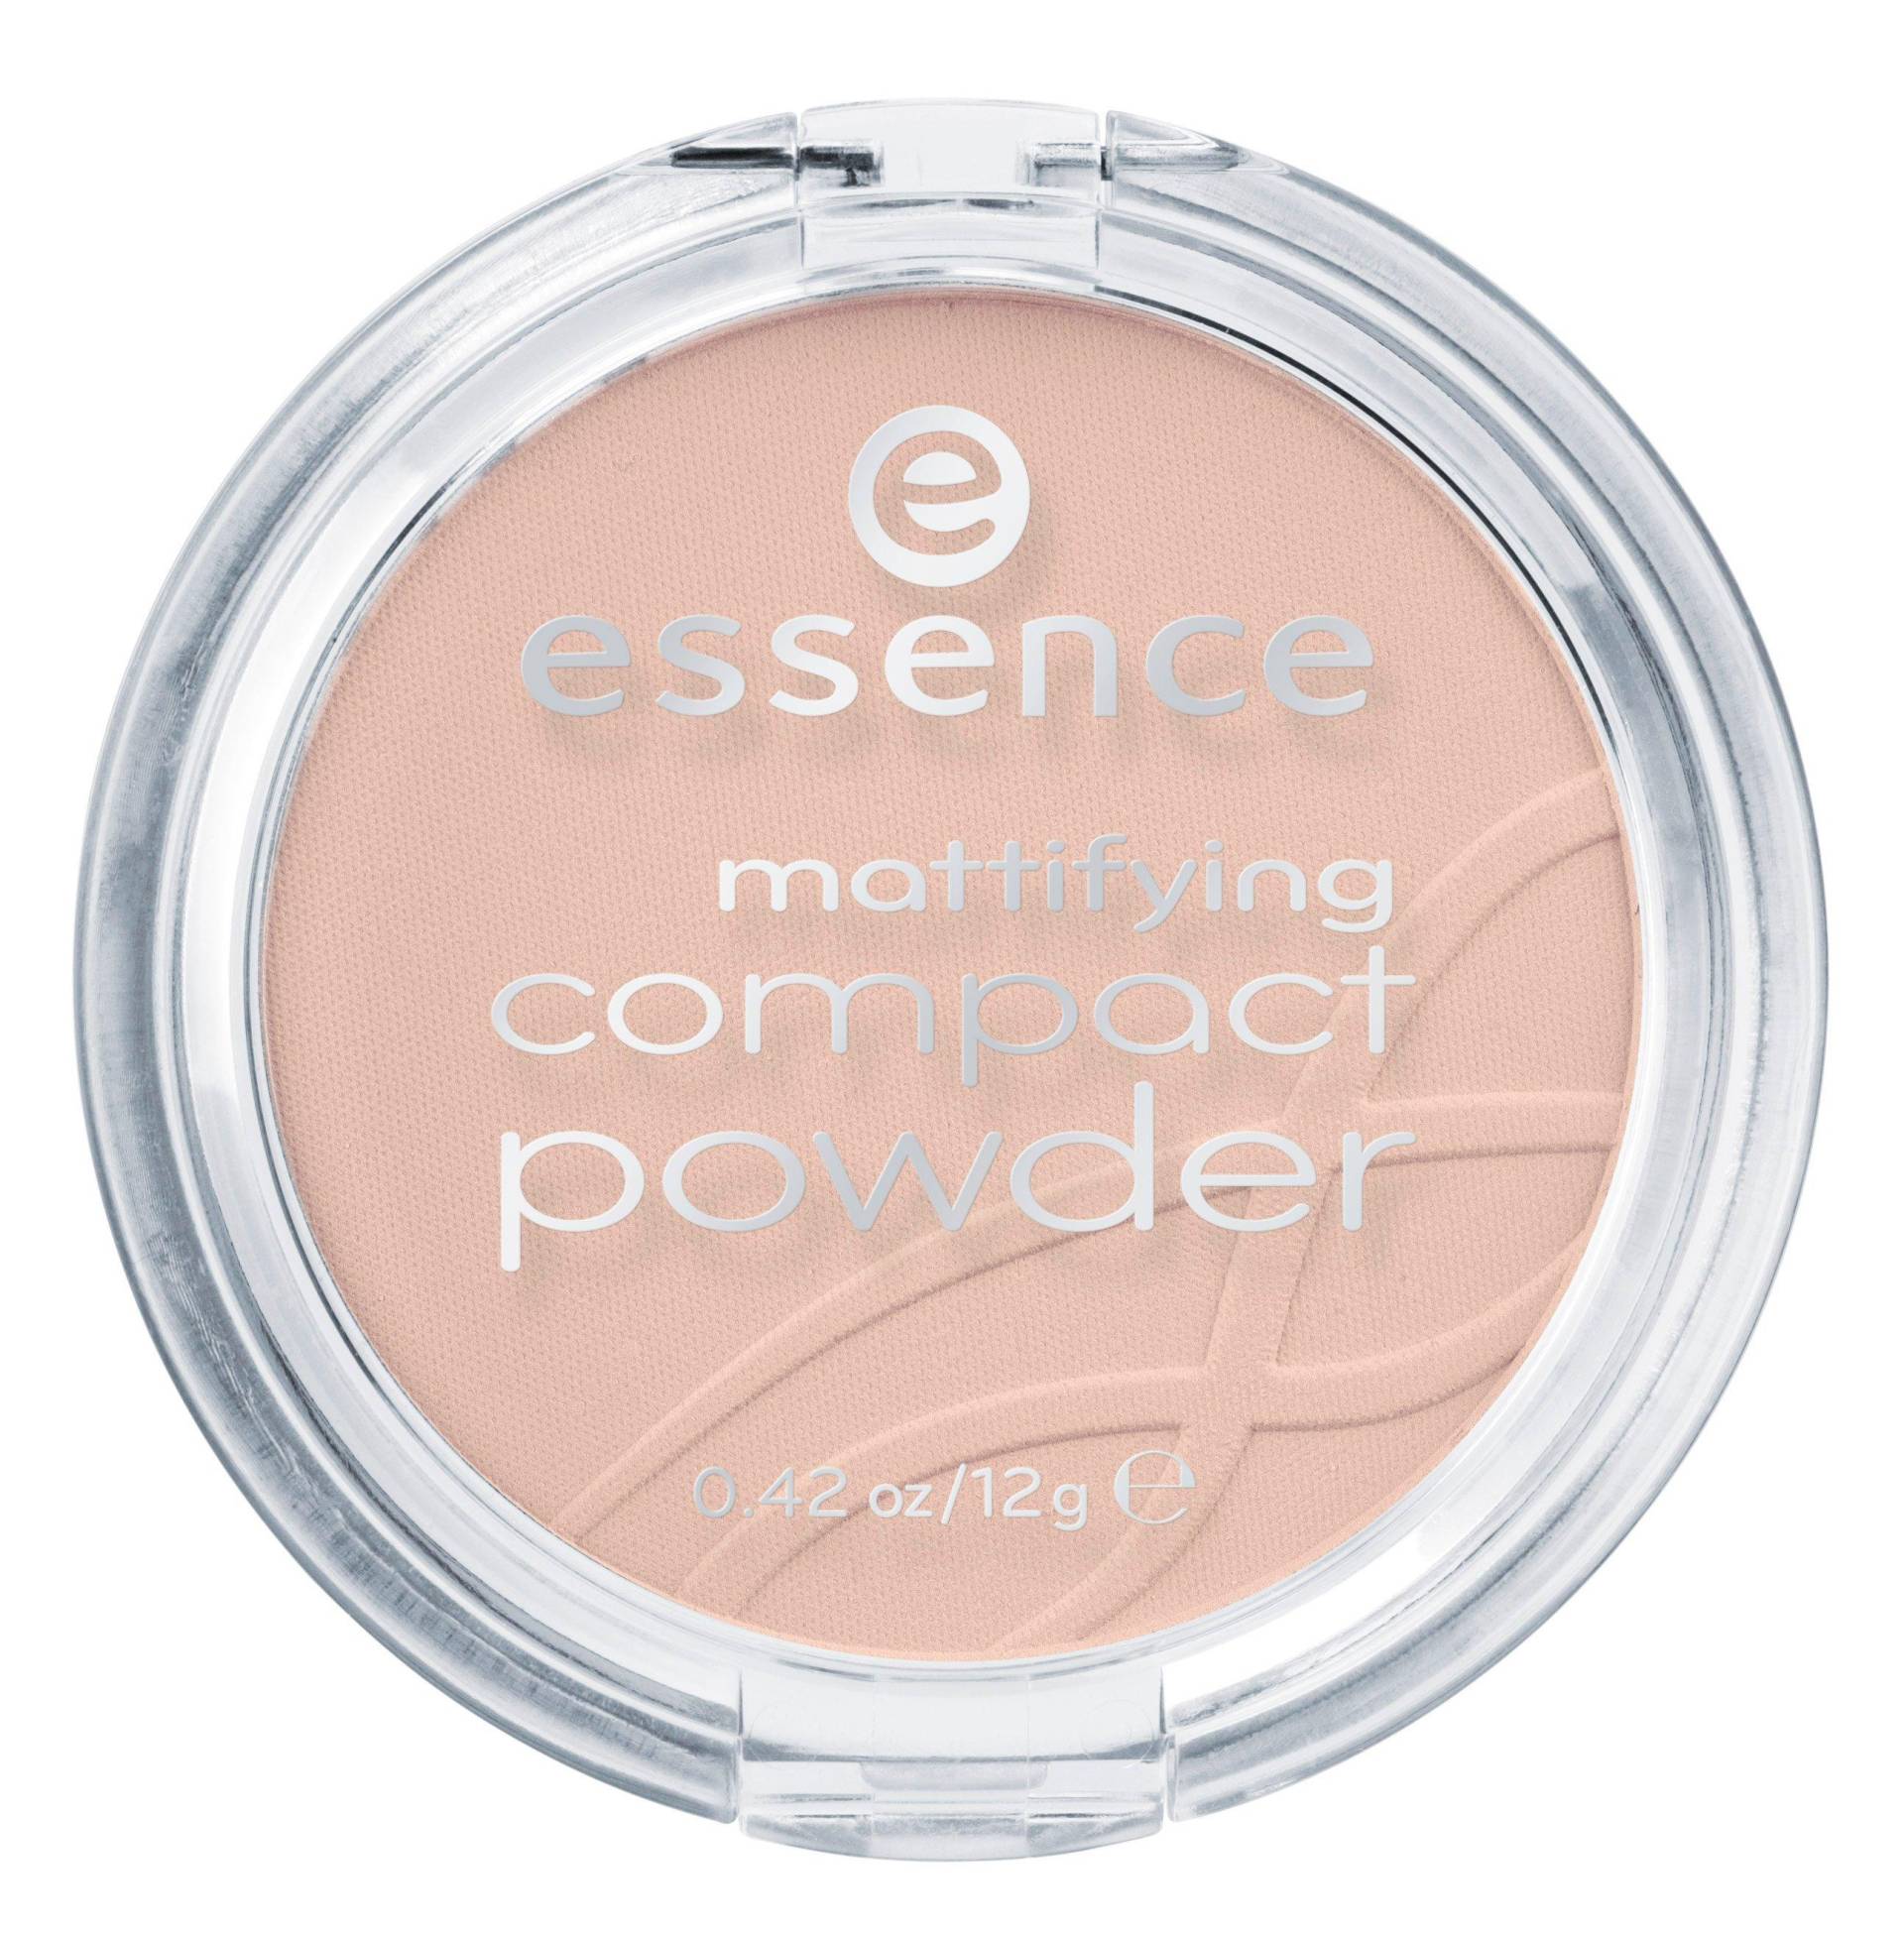 Mineral Compact Powder Damen  Soft Beige g#298/12g von essence